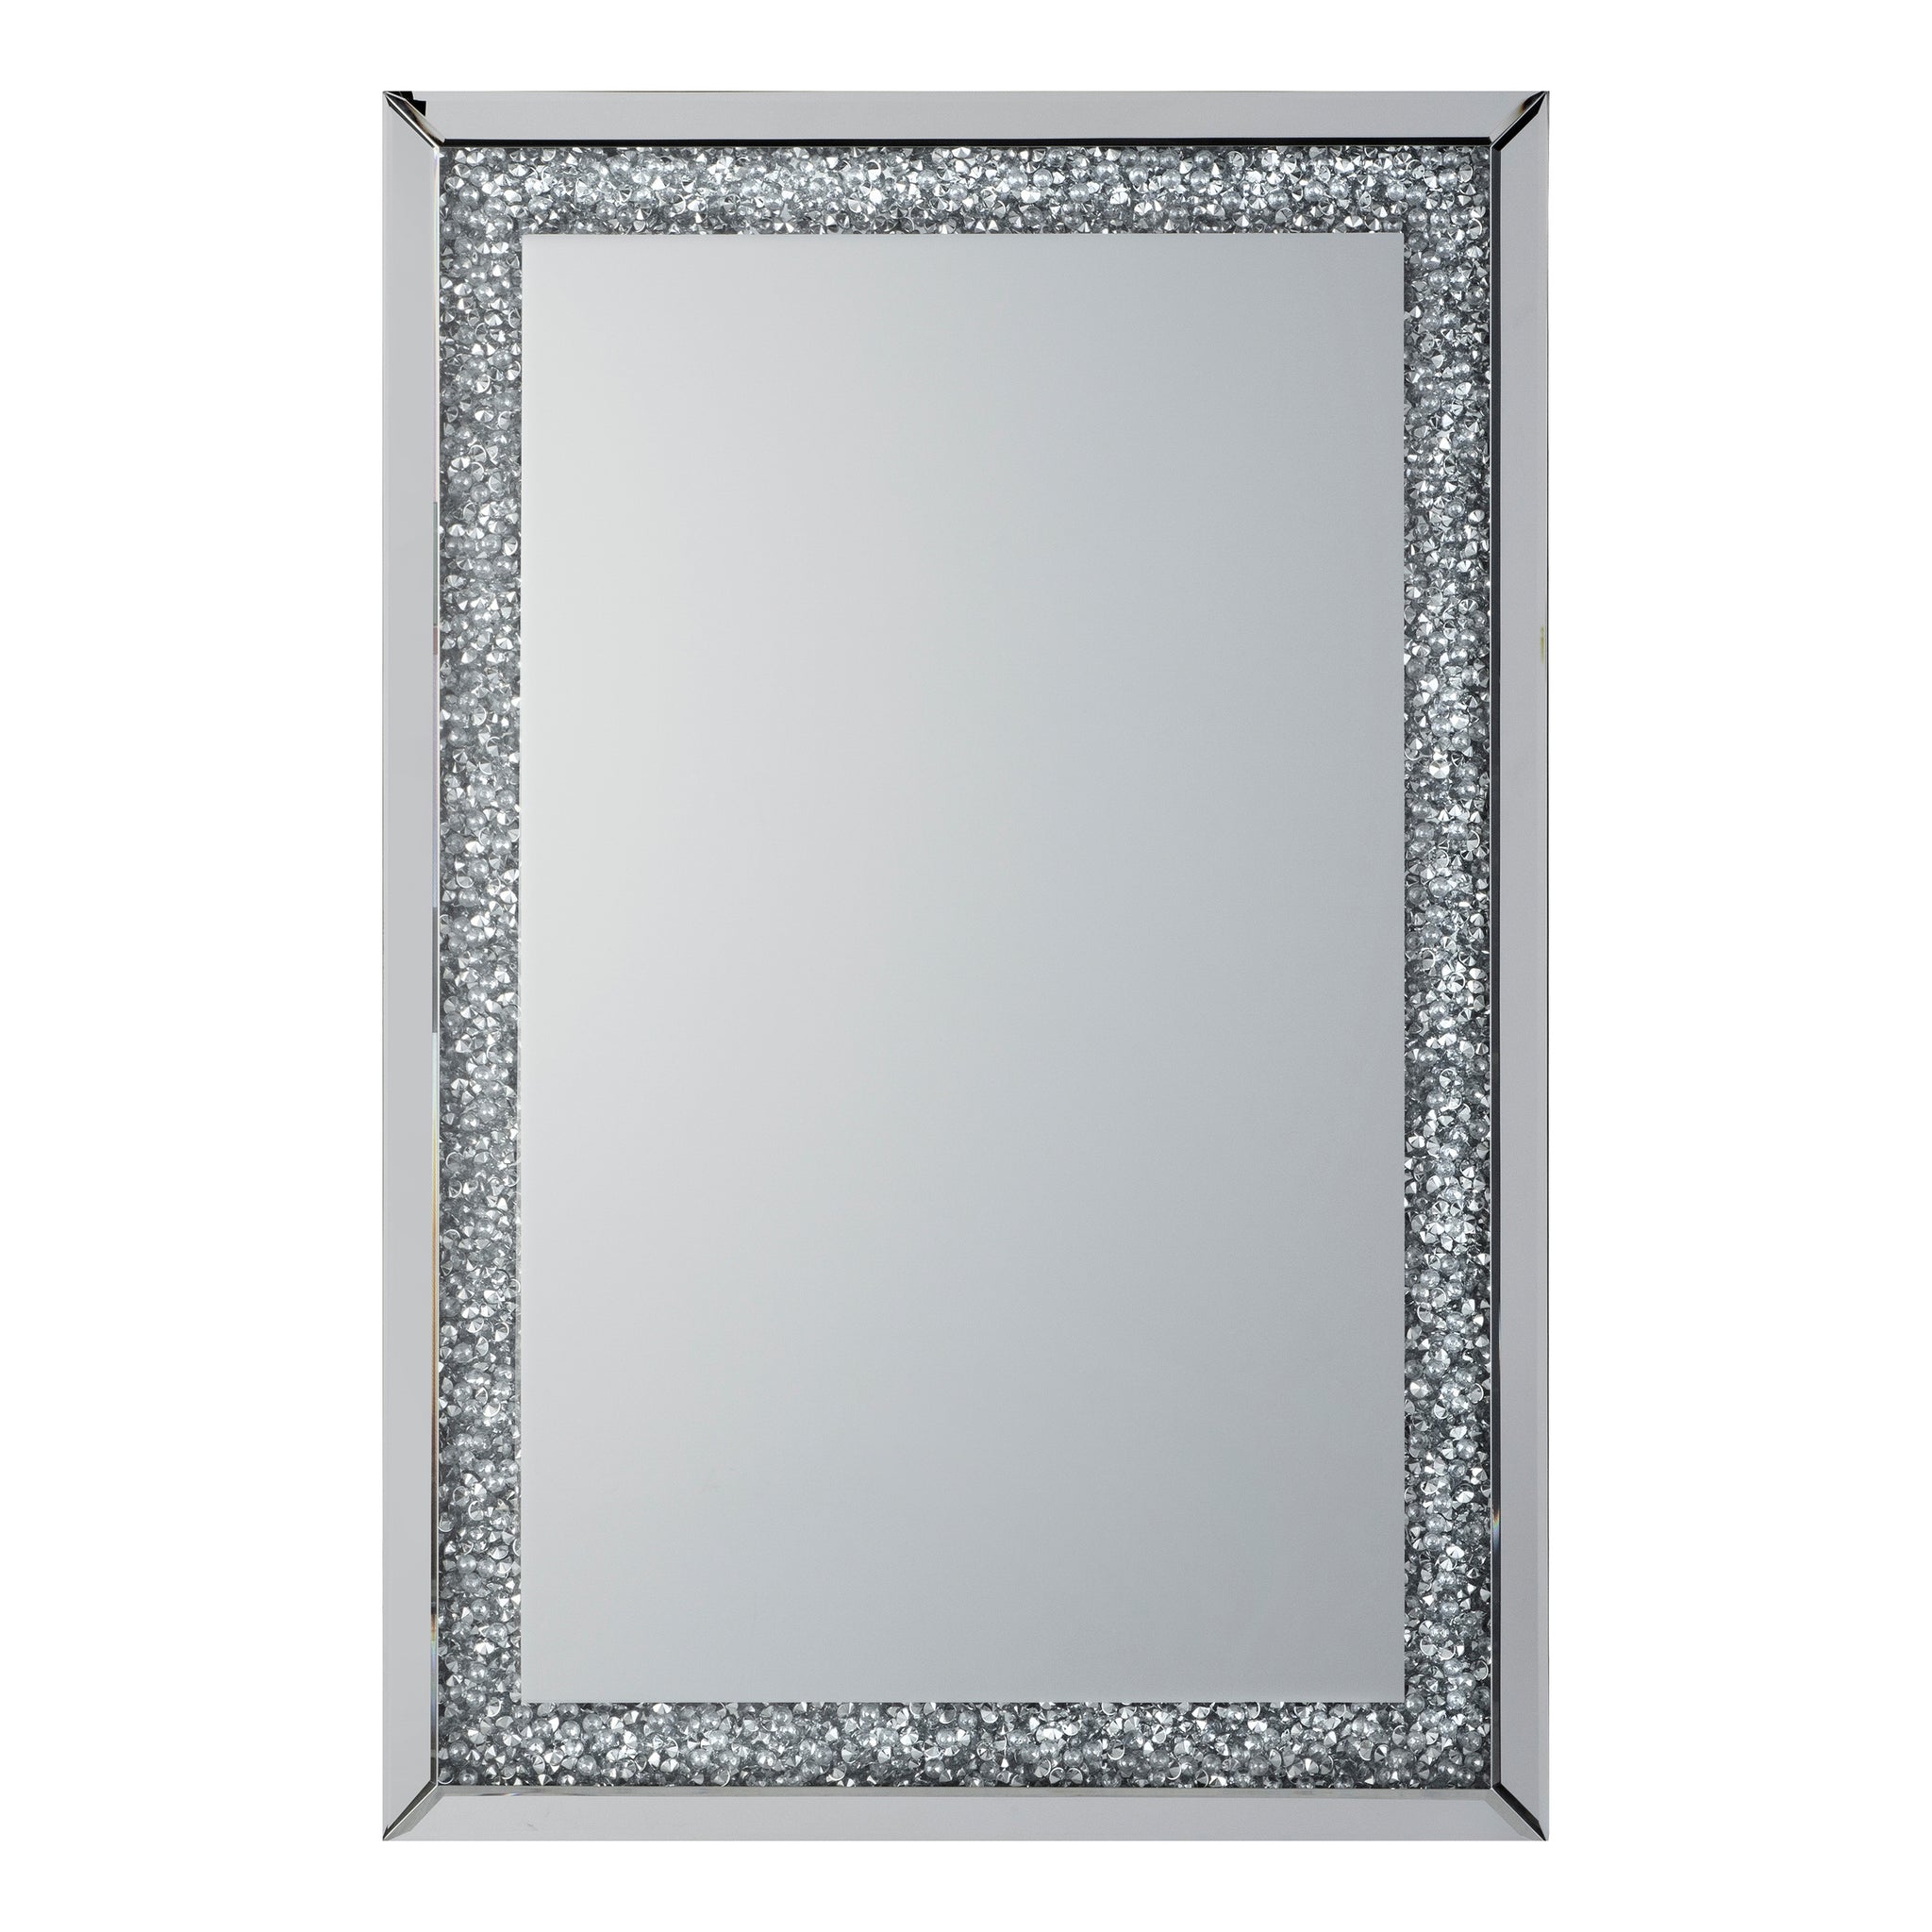 Westmore Silver Mirror 80 x 100 cm